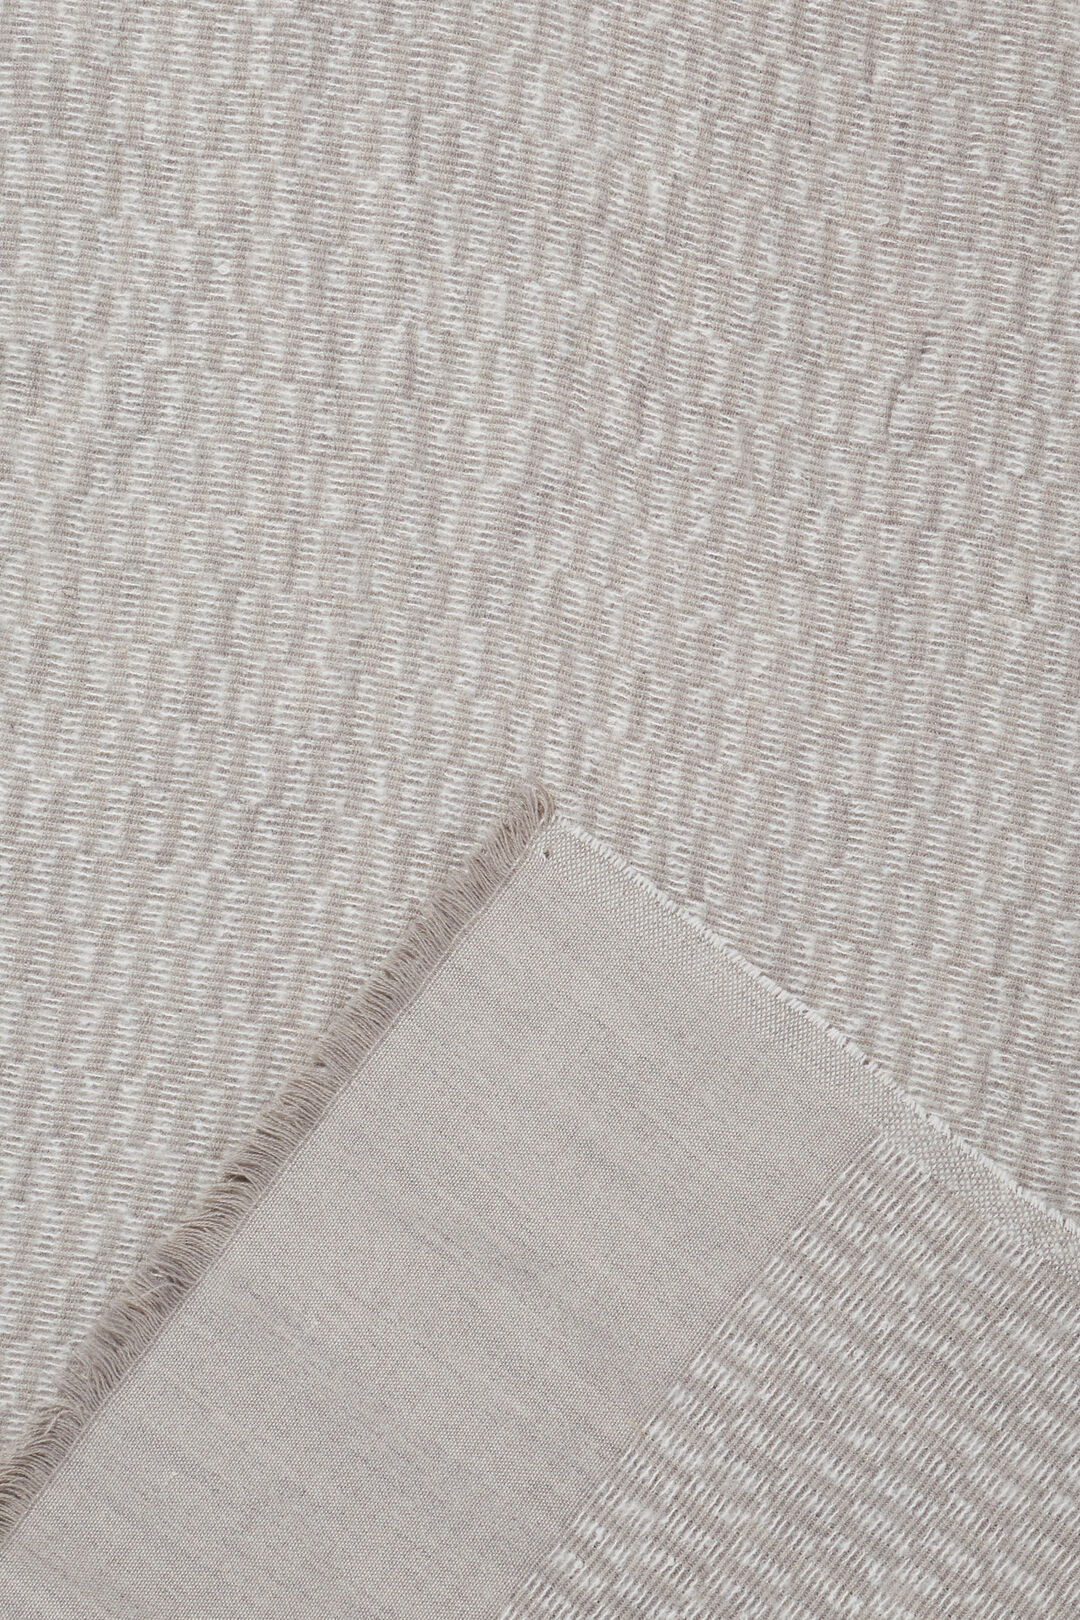 Wool Blend Scarf  Grey Multi  hi-res